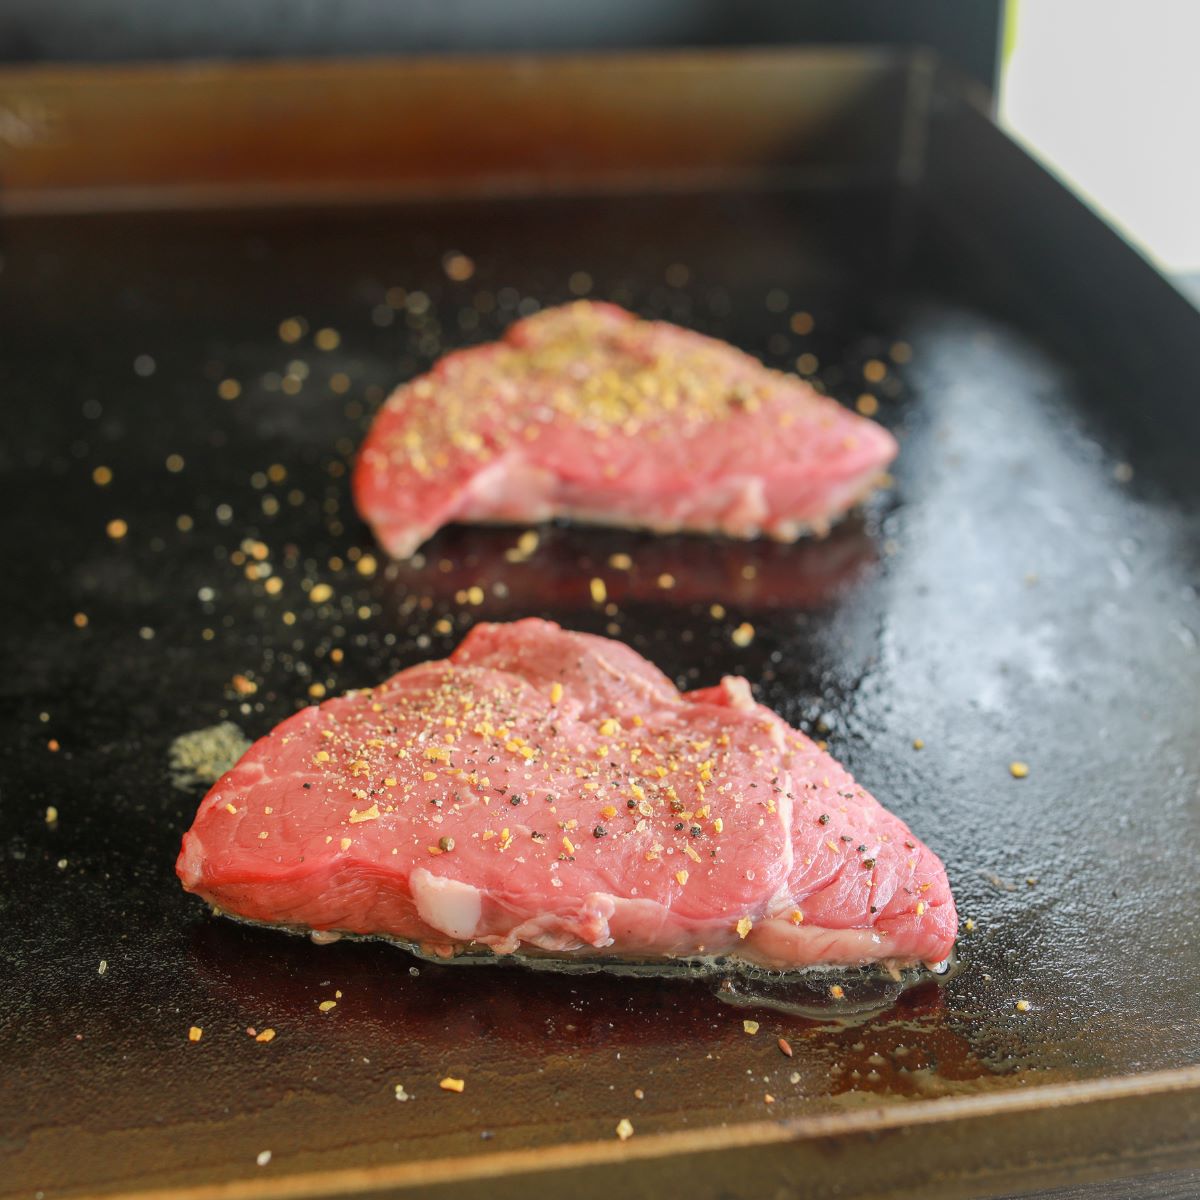 Blackstone Steak Recipe